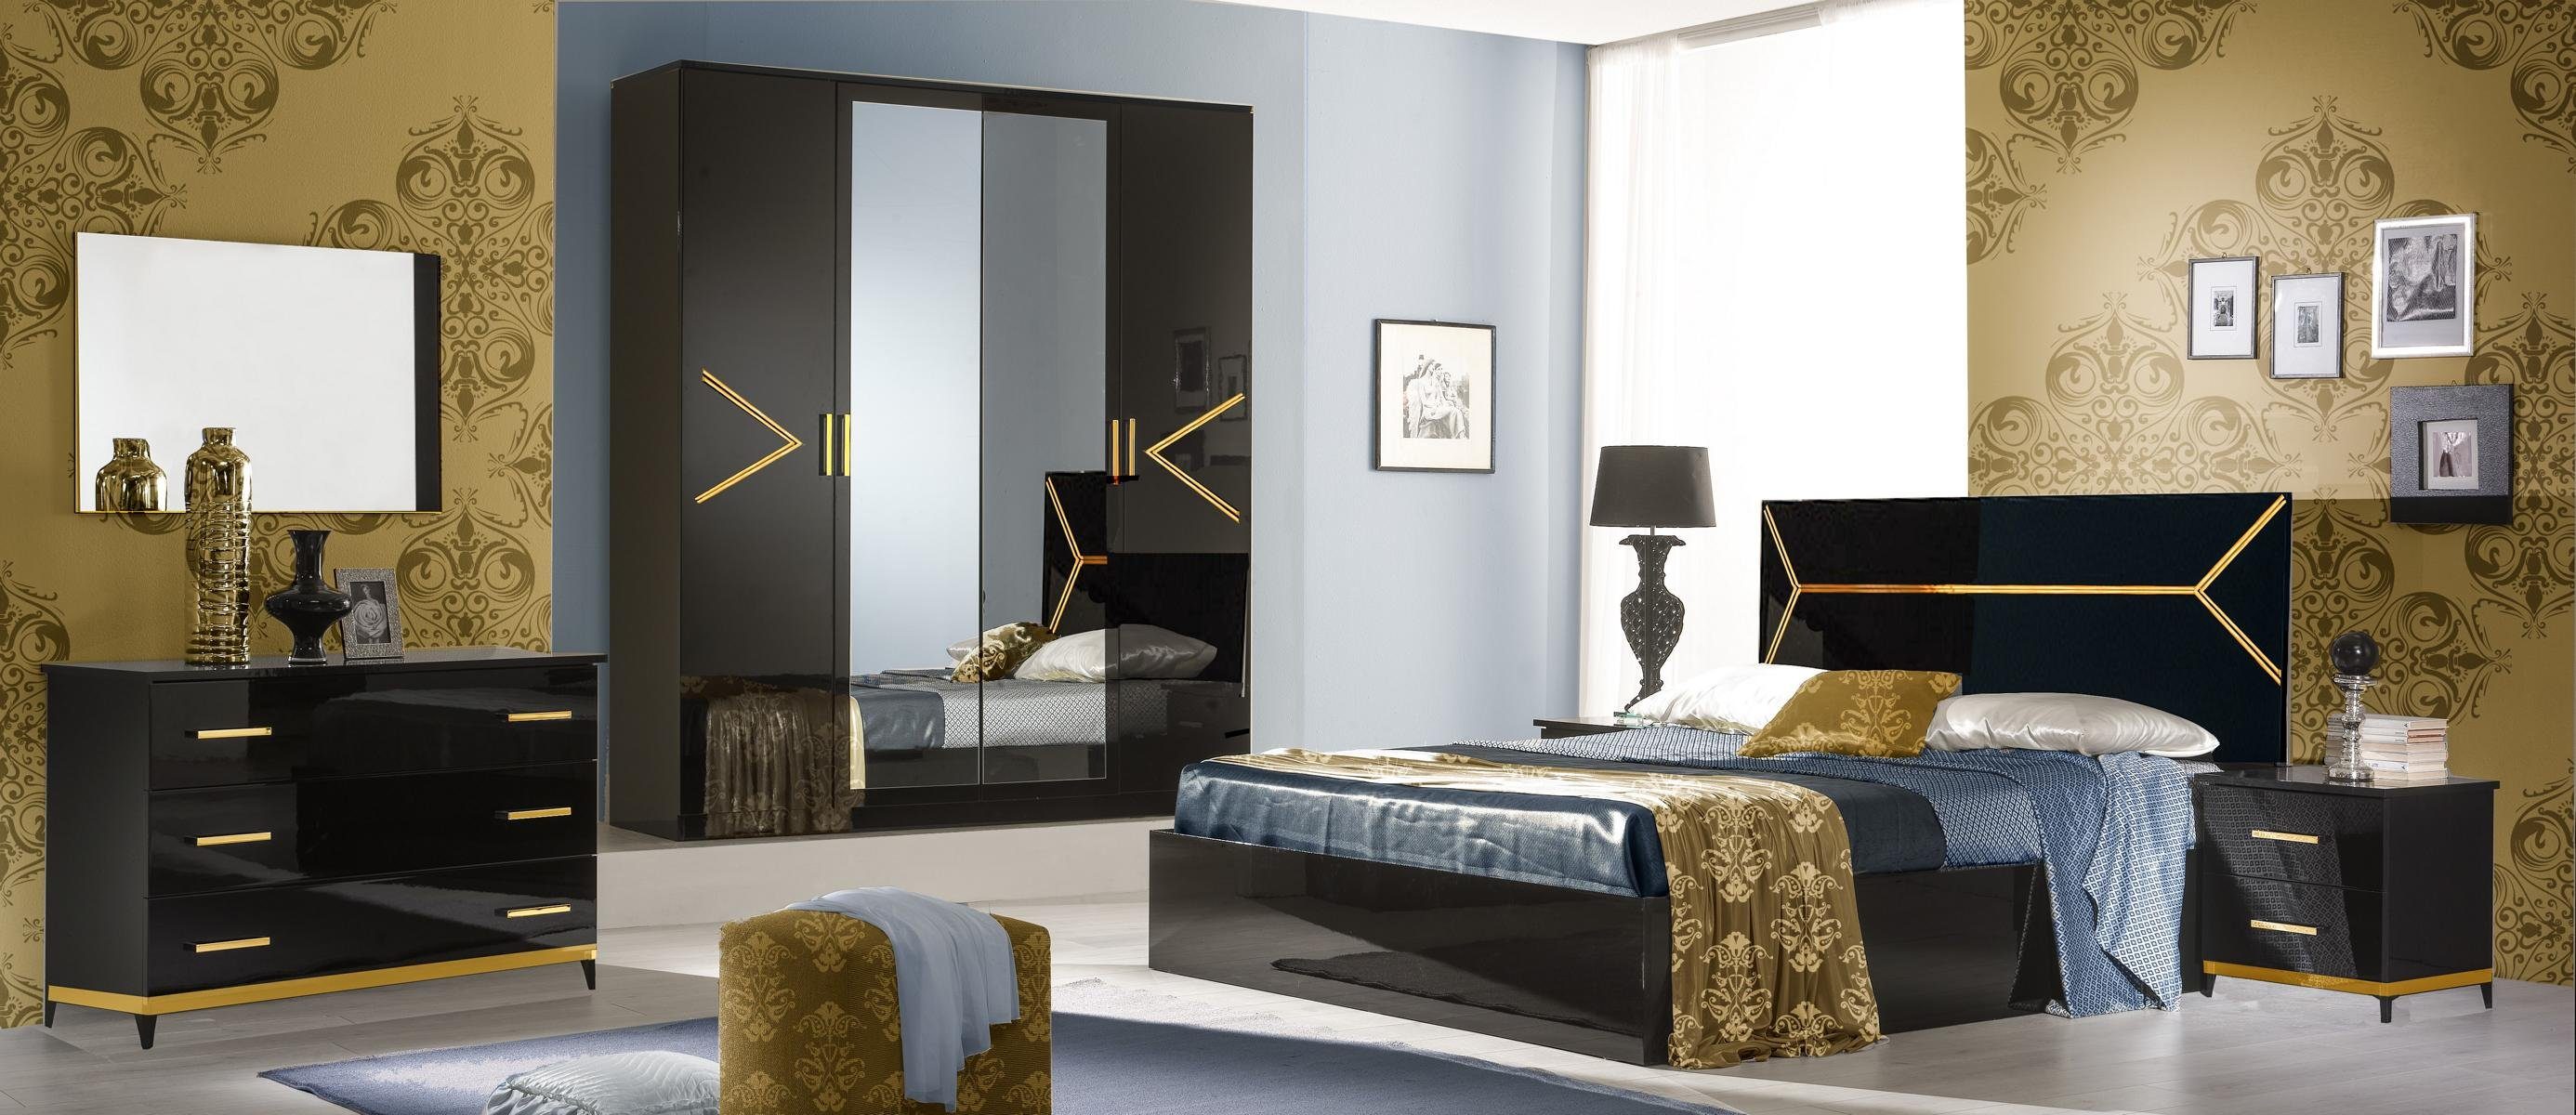 JVmoebel Schlafzimmer-Set Schlafzimmer Set Garnitur Holz 6 Stil Kommode Bett Modern Luxus tlg